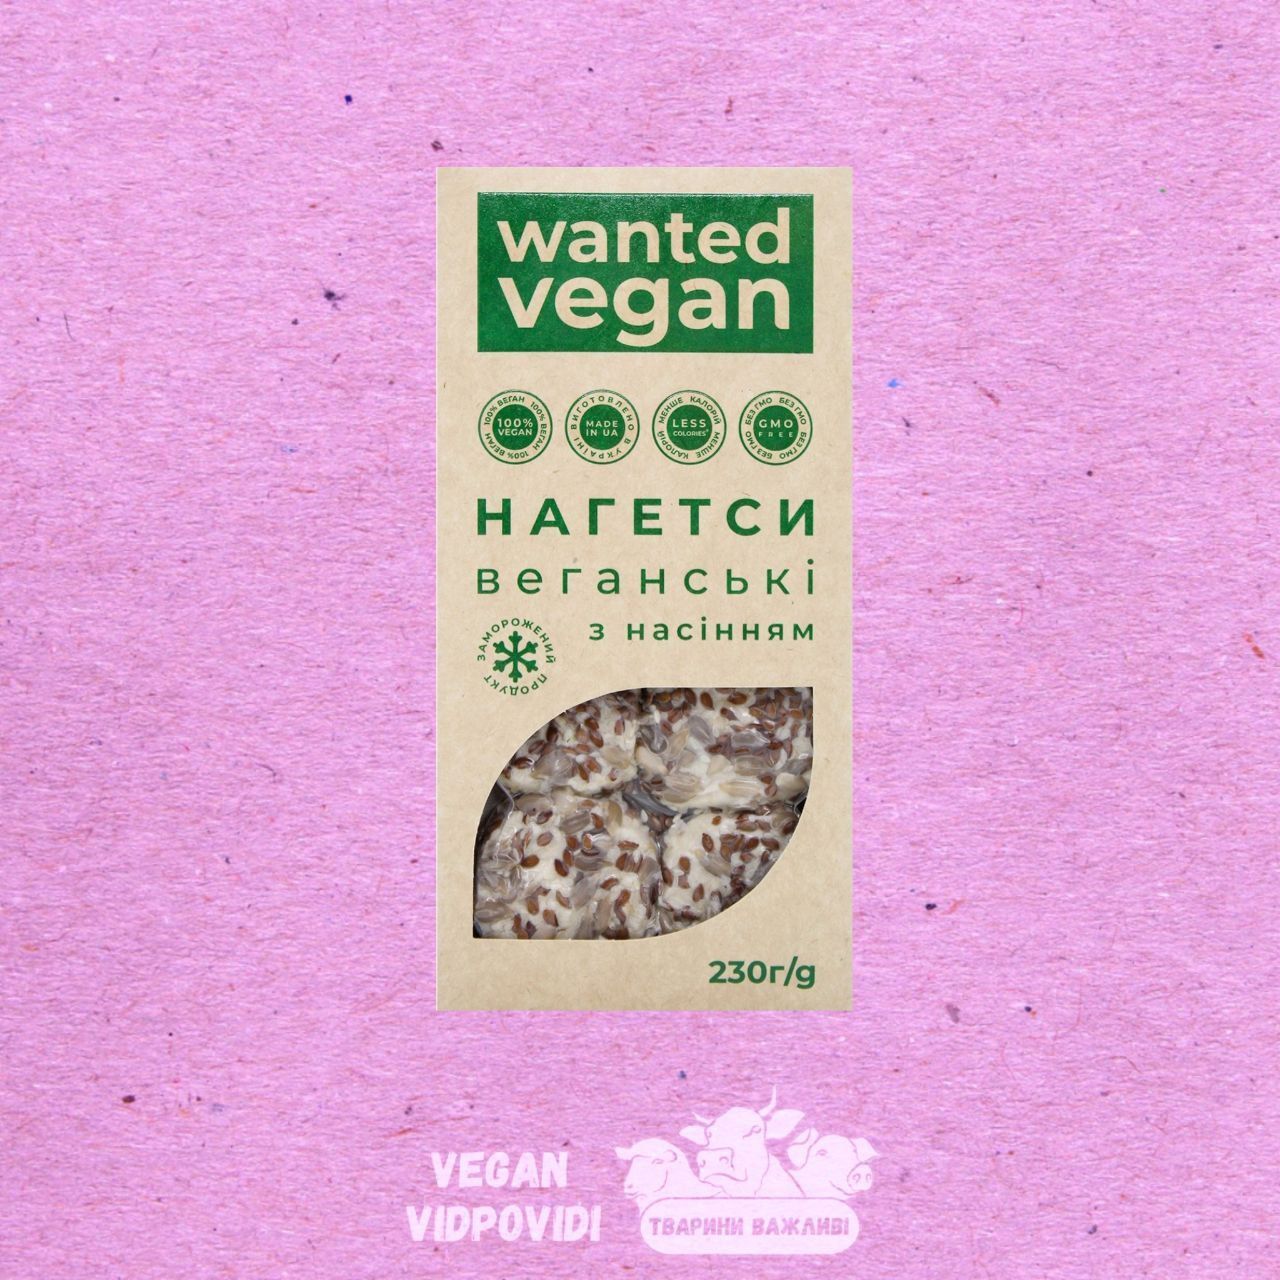 Нагетси веганські з насінням Wanted vegan